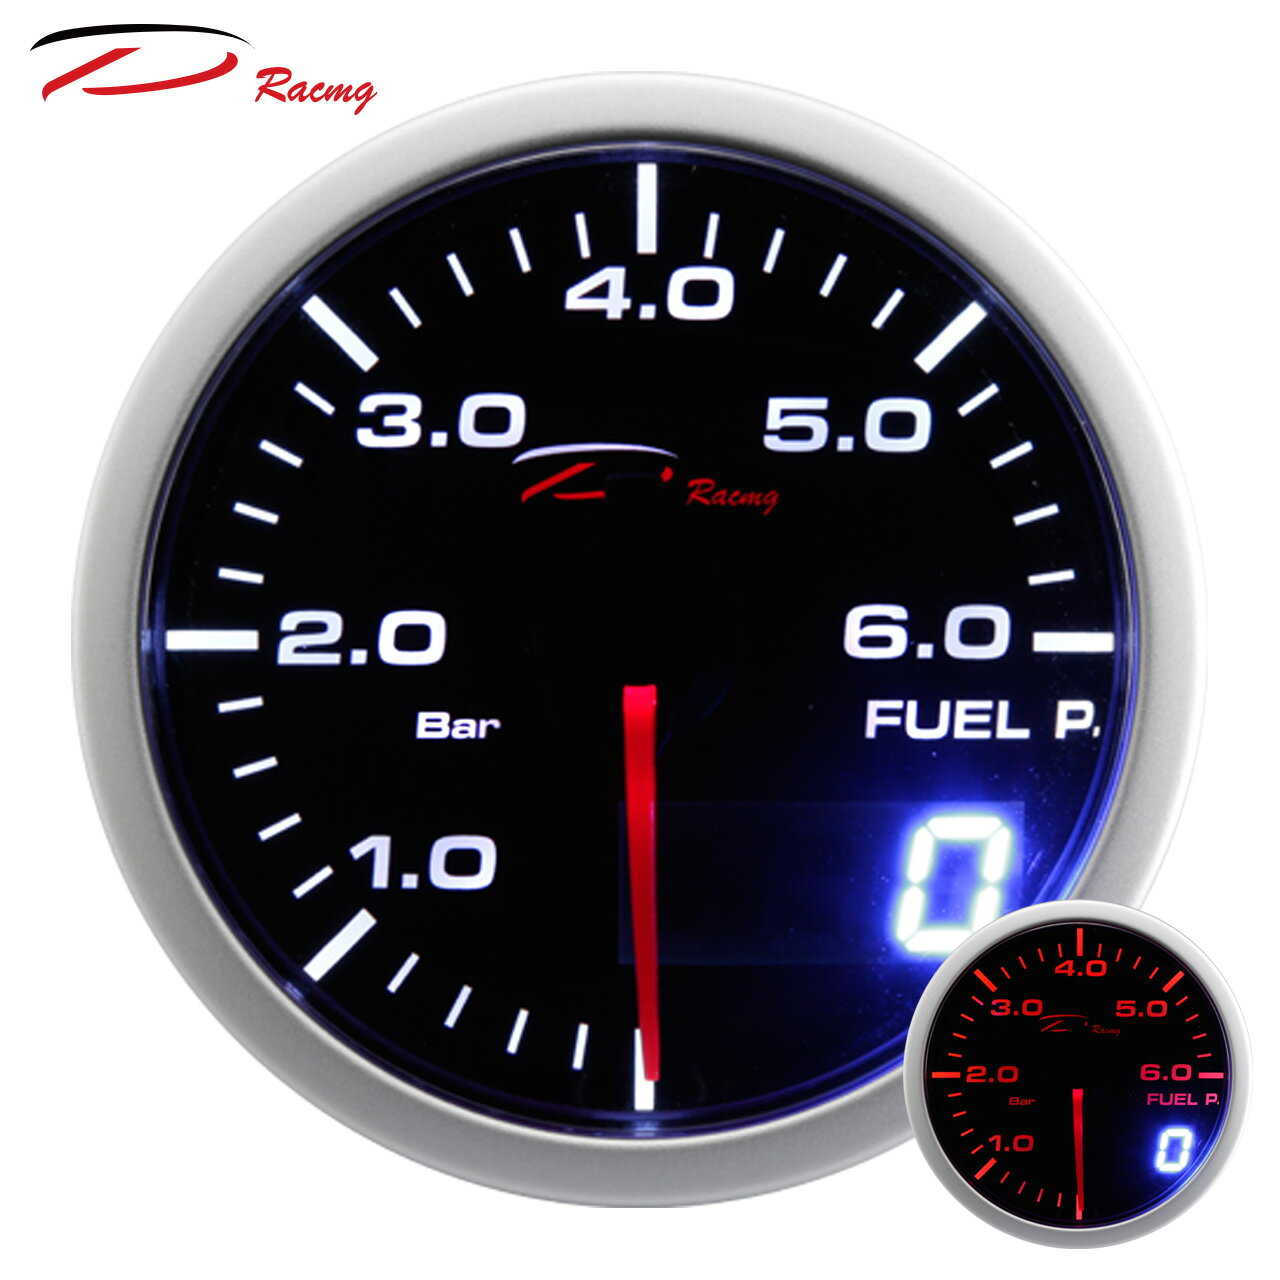 【D Racing三環錶/改裝錶】60mm汽油壓力錶(燃壓錶) FUEL PRESSURE。Dual View 指針+數字雙顯示系列。錶頭無設定功能。